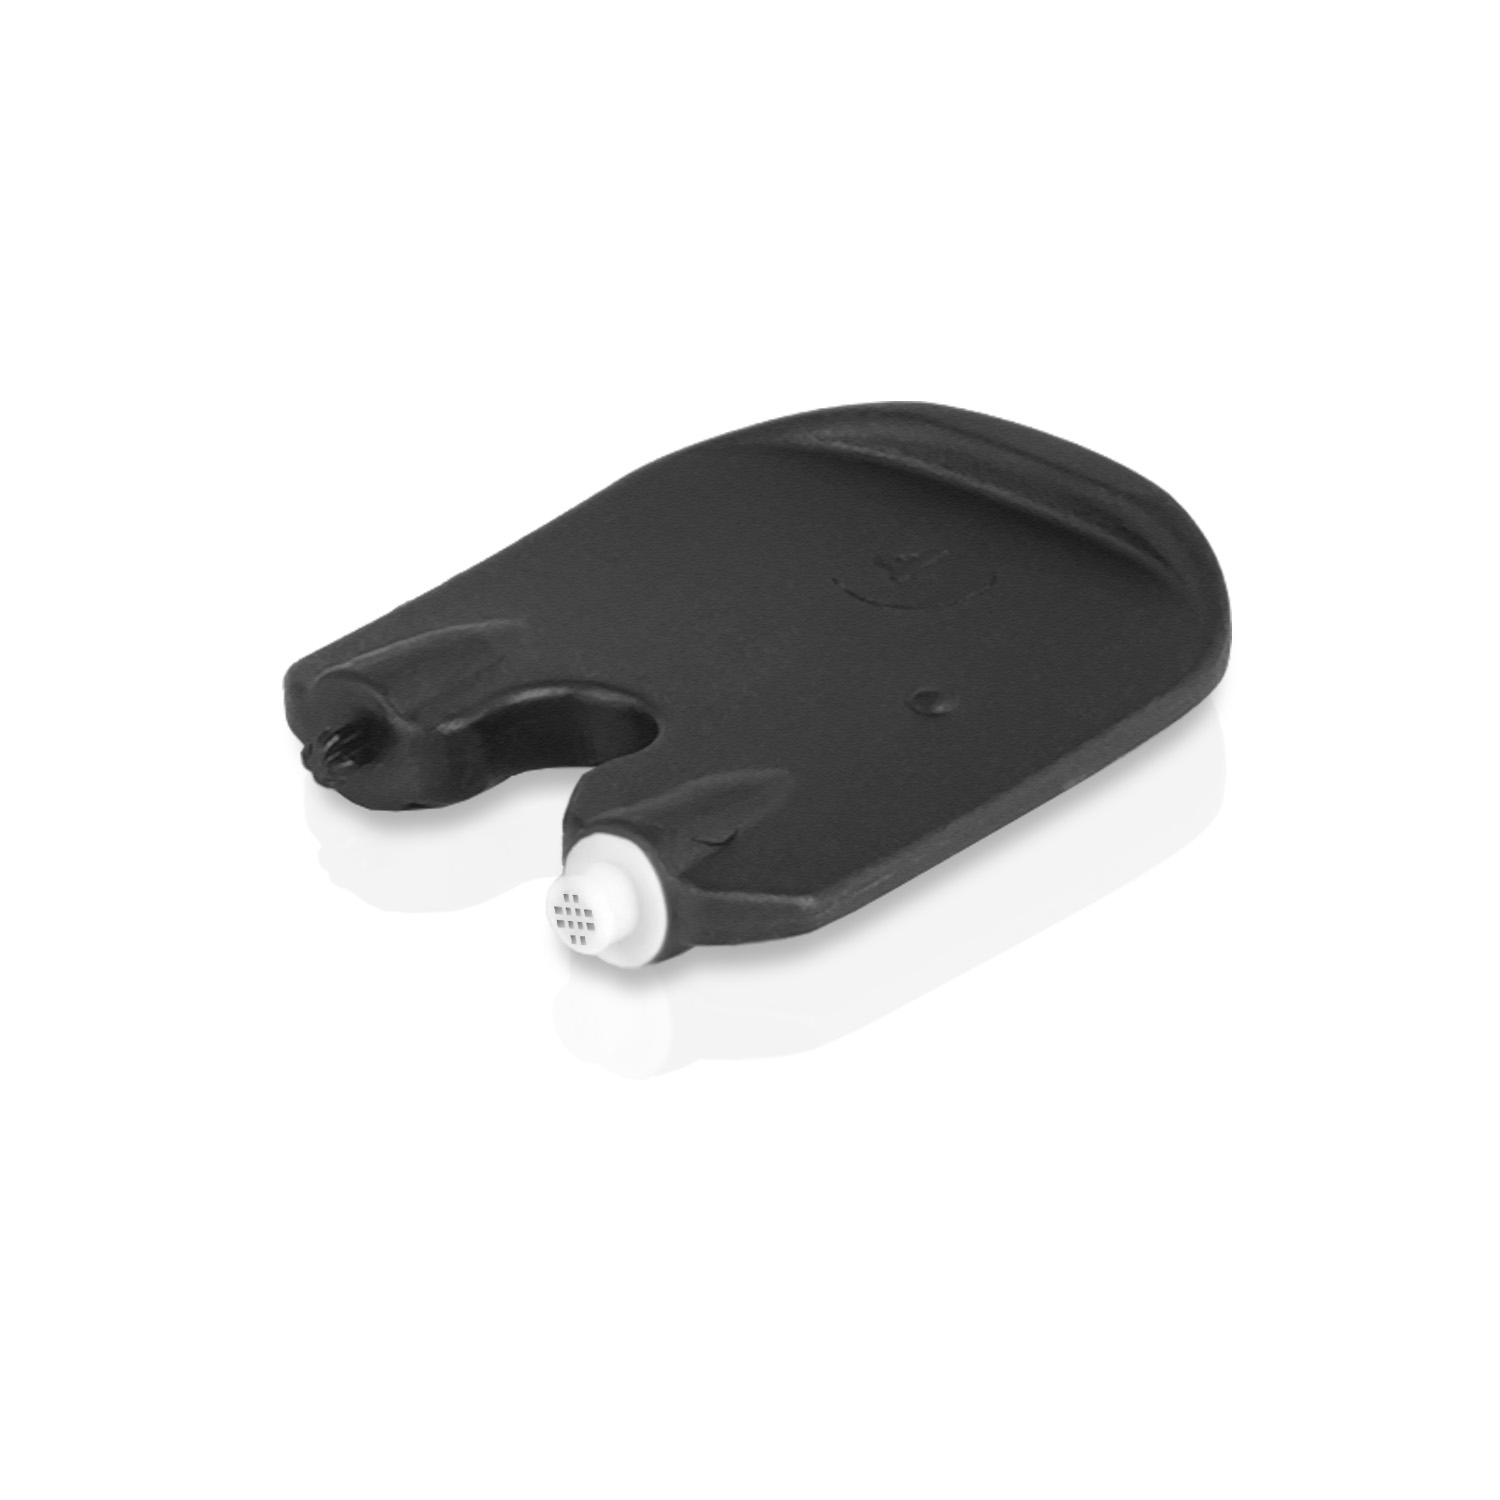 JB WHITE 48x ProWax MiniFit Cerumenfilter Bernafon Oticon, Zubehör Cerumenfilter für Hörgeräte Hörgeräte Filter für und Auditio